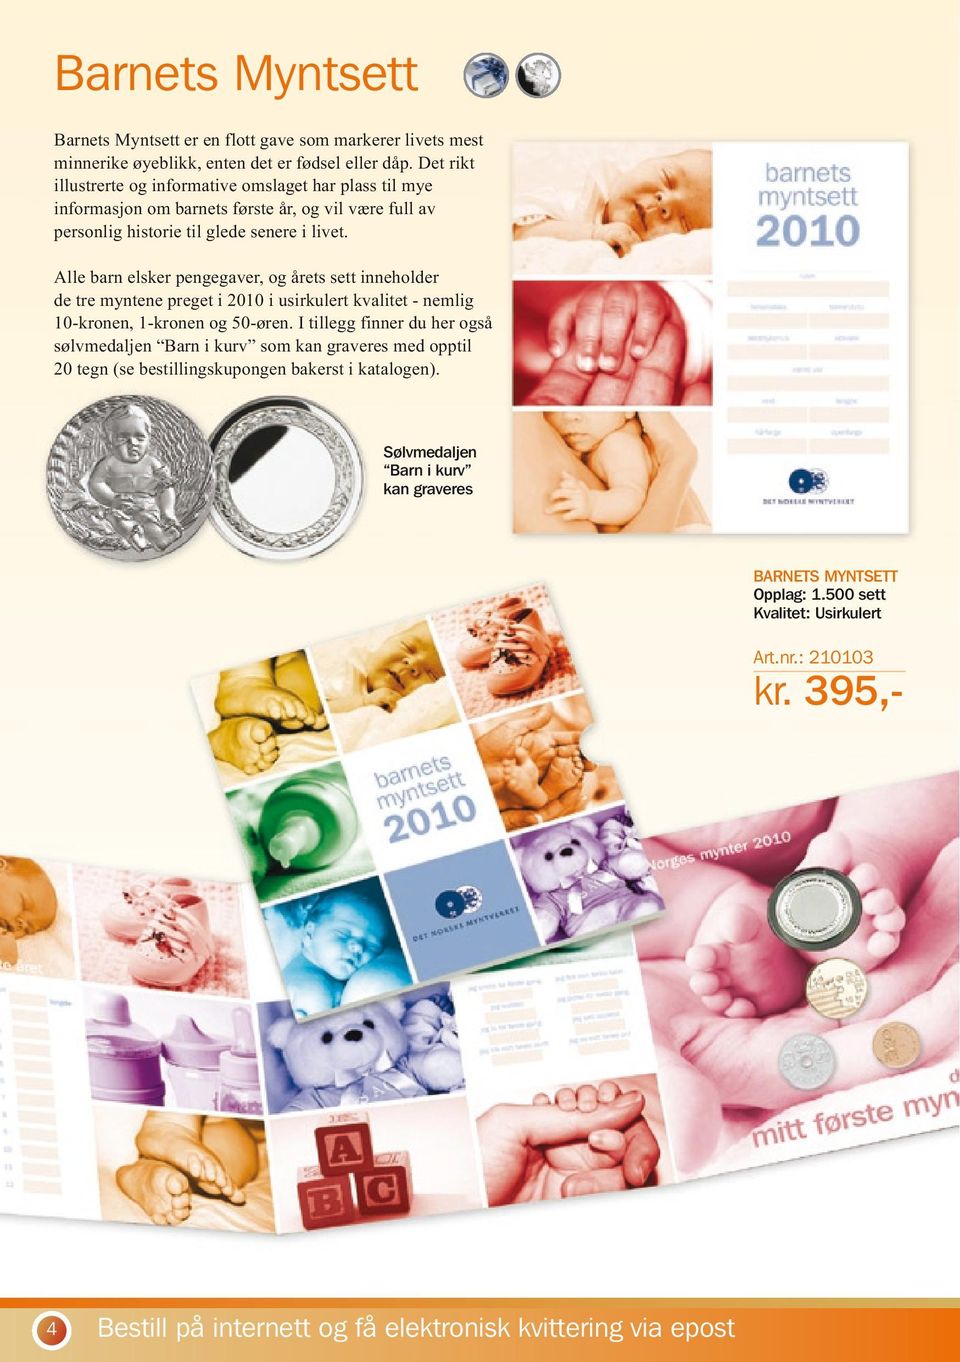 Alle barn elsker pengegaver, og årets sett inneholder de tre myntene preget i 2010 i usirkulert kvalitet - nemlig 10-kronen, 1-kronen og 50-øren.